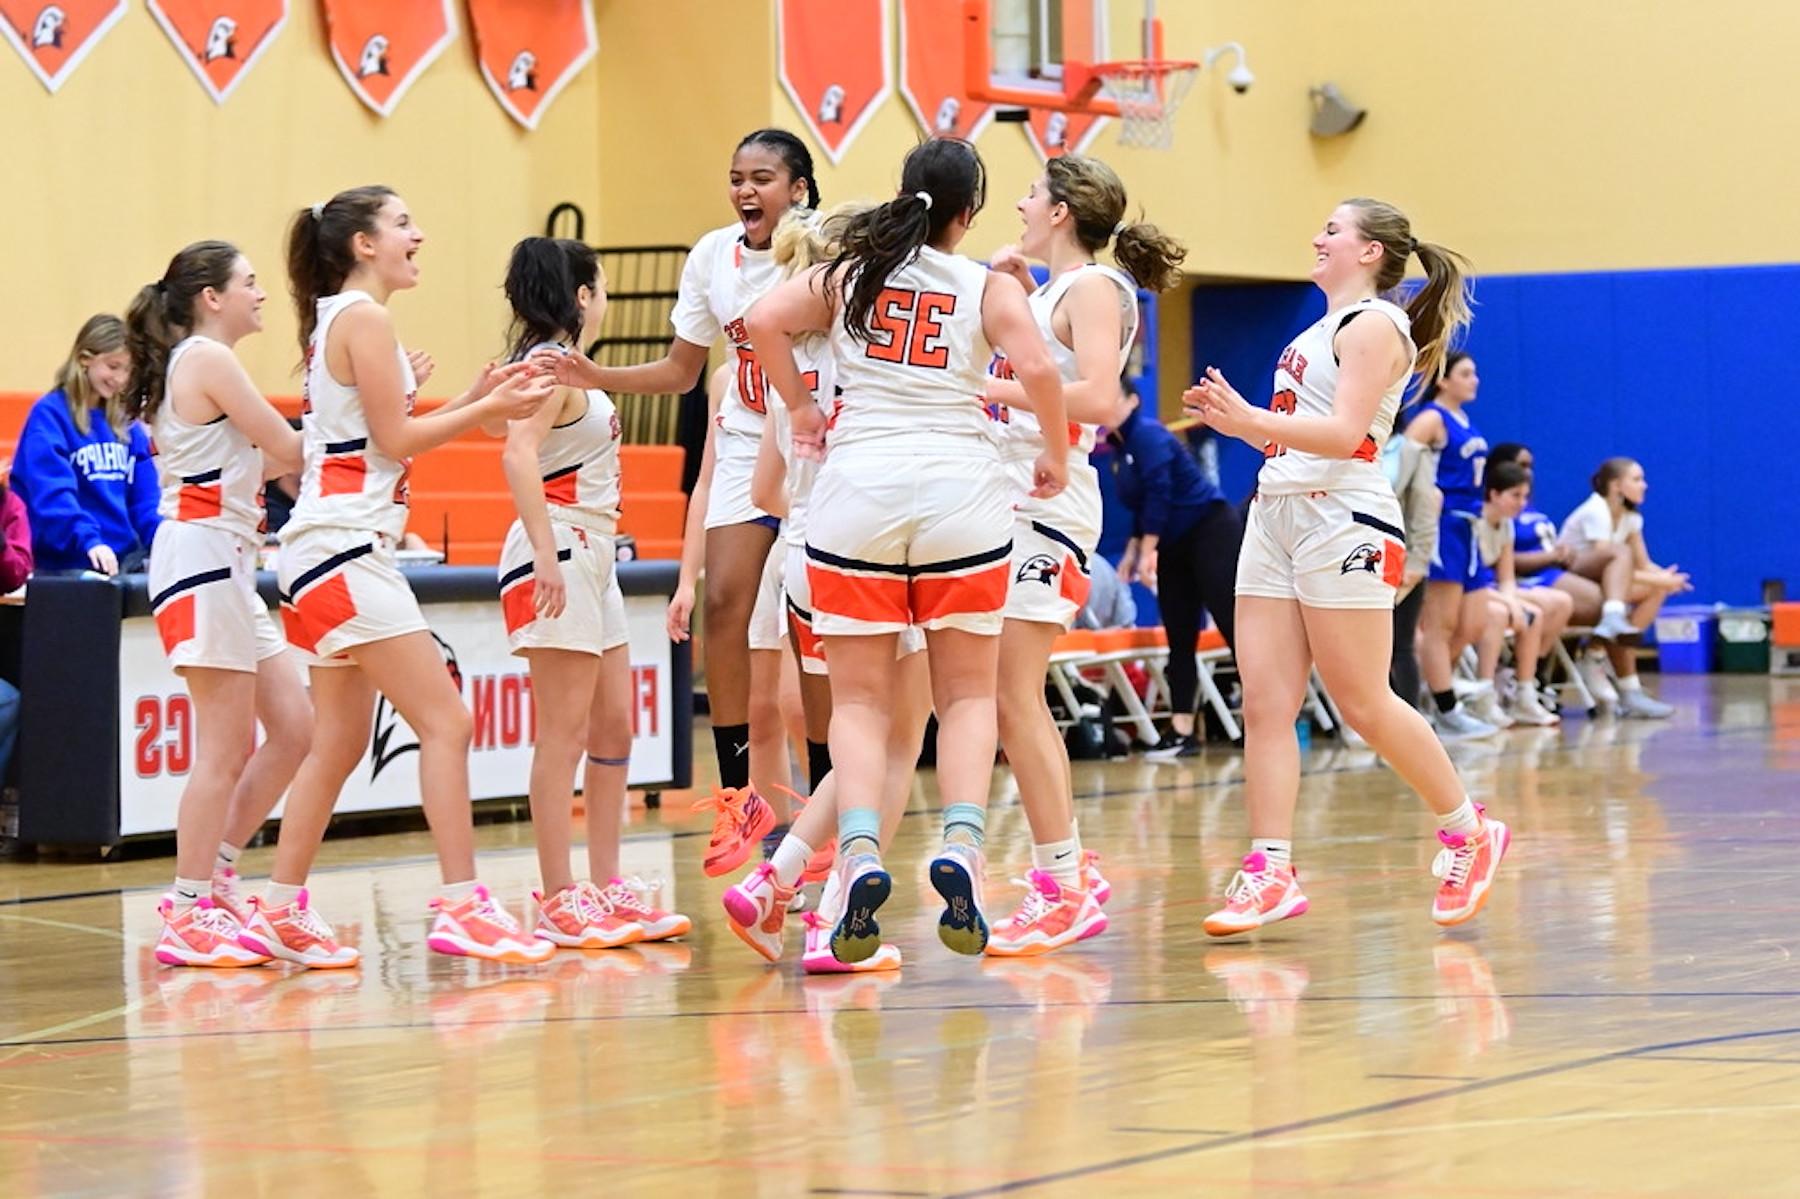 菲尔德斯顿·厄普的女子大学篮球队在大学体育馆进行比赛. 他们庆祝胜利!